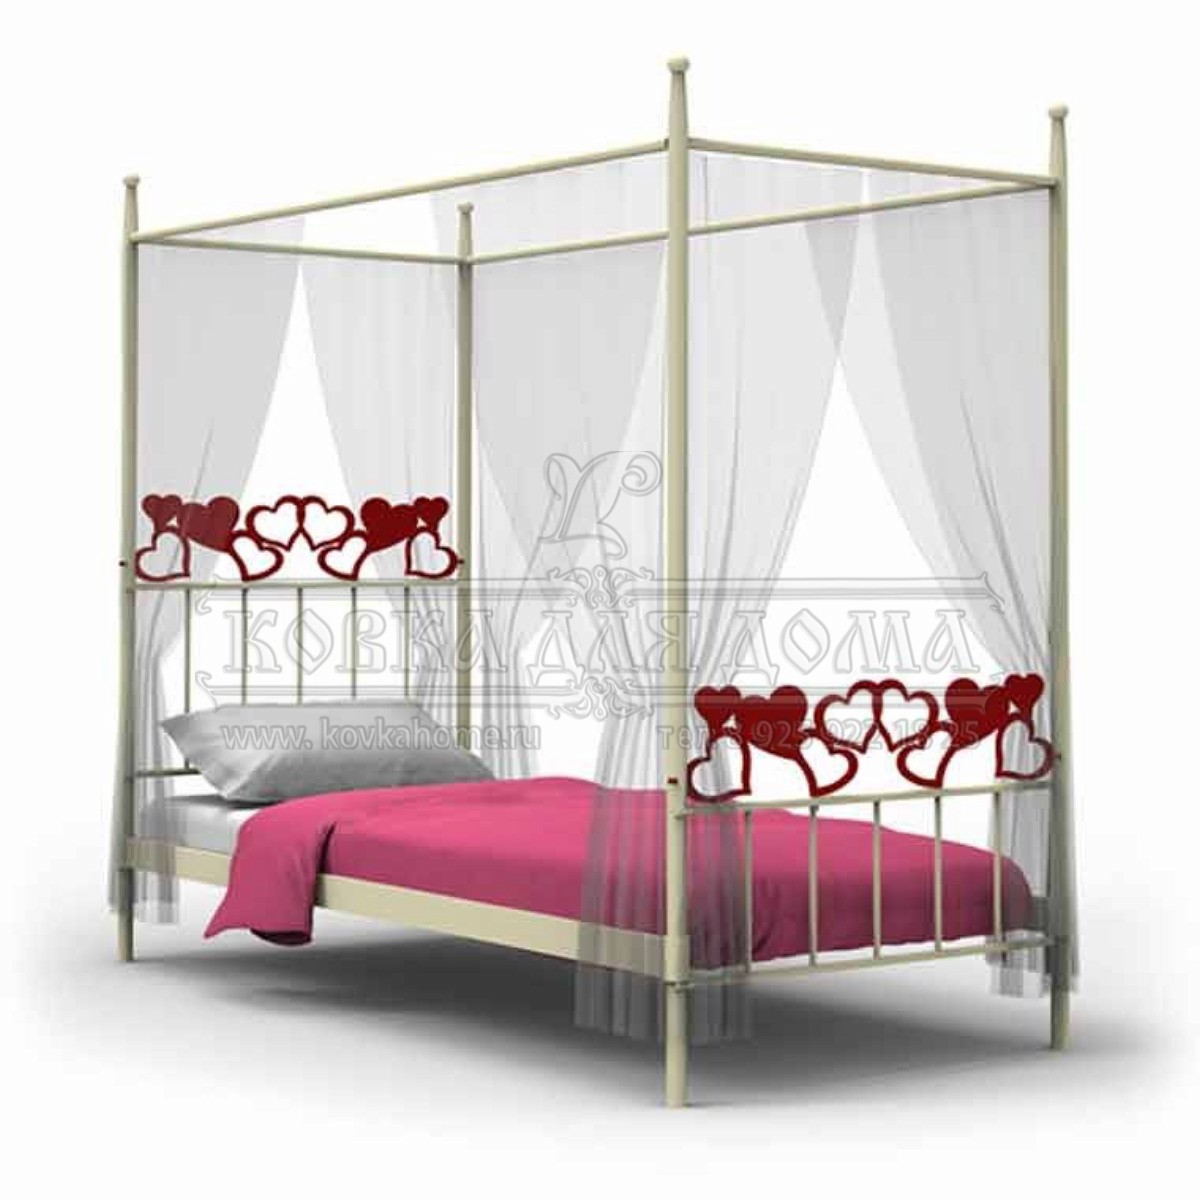 Кованая кровать с балдахином белая, с декором в виде сердечек дизайнерская ручная работа на заказ производитель г. Москва мастерская Ковка для Дома.